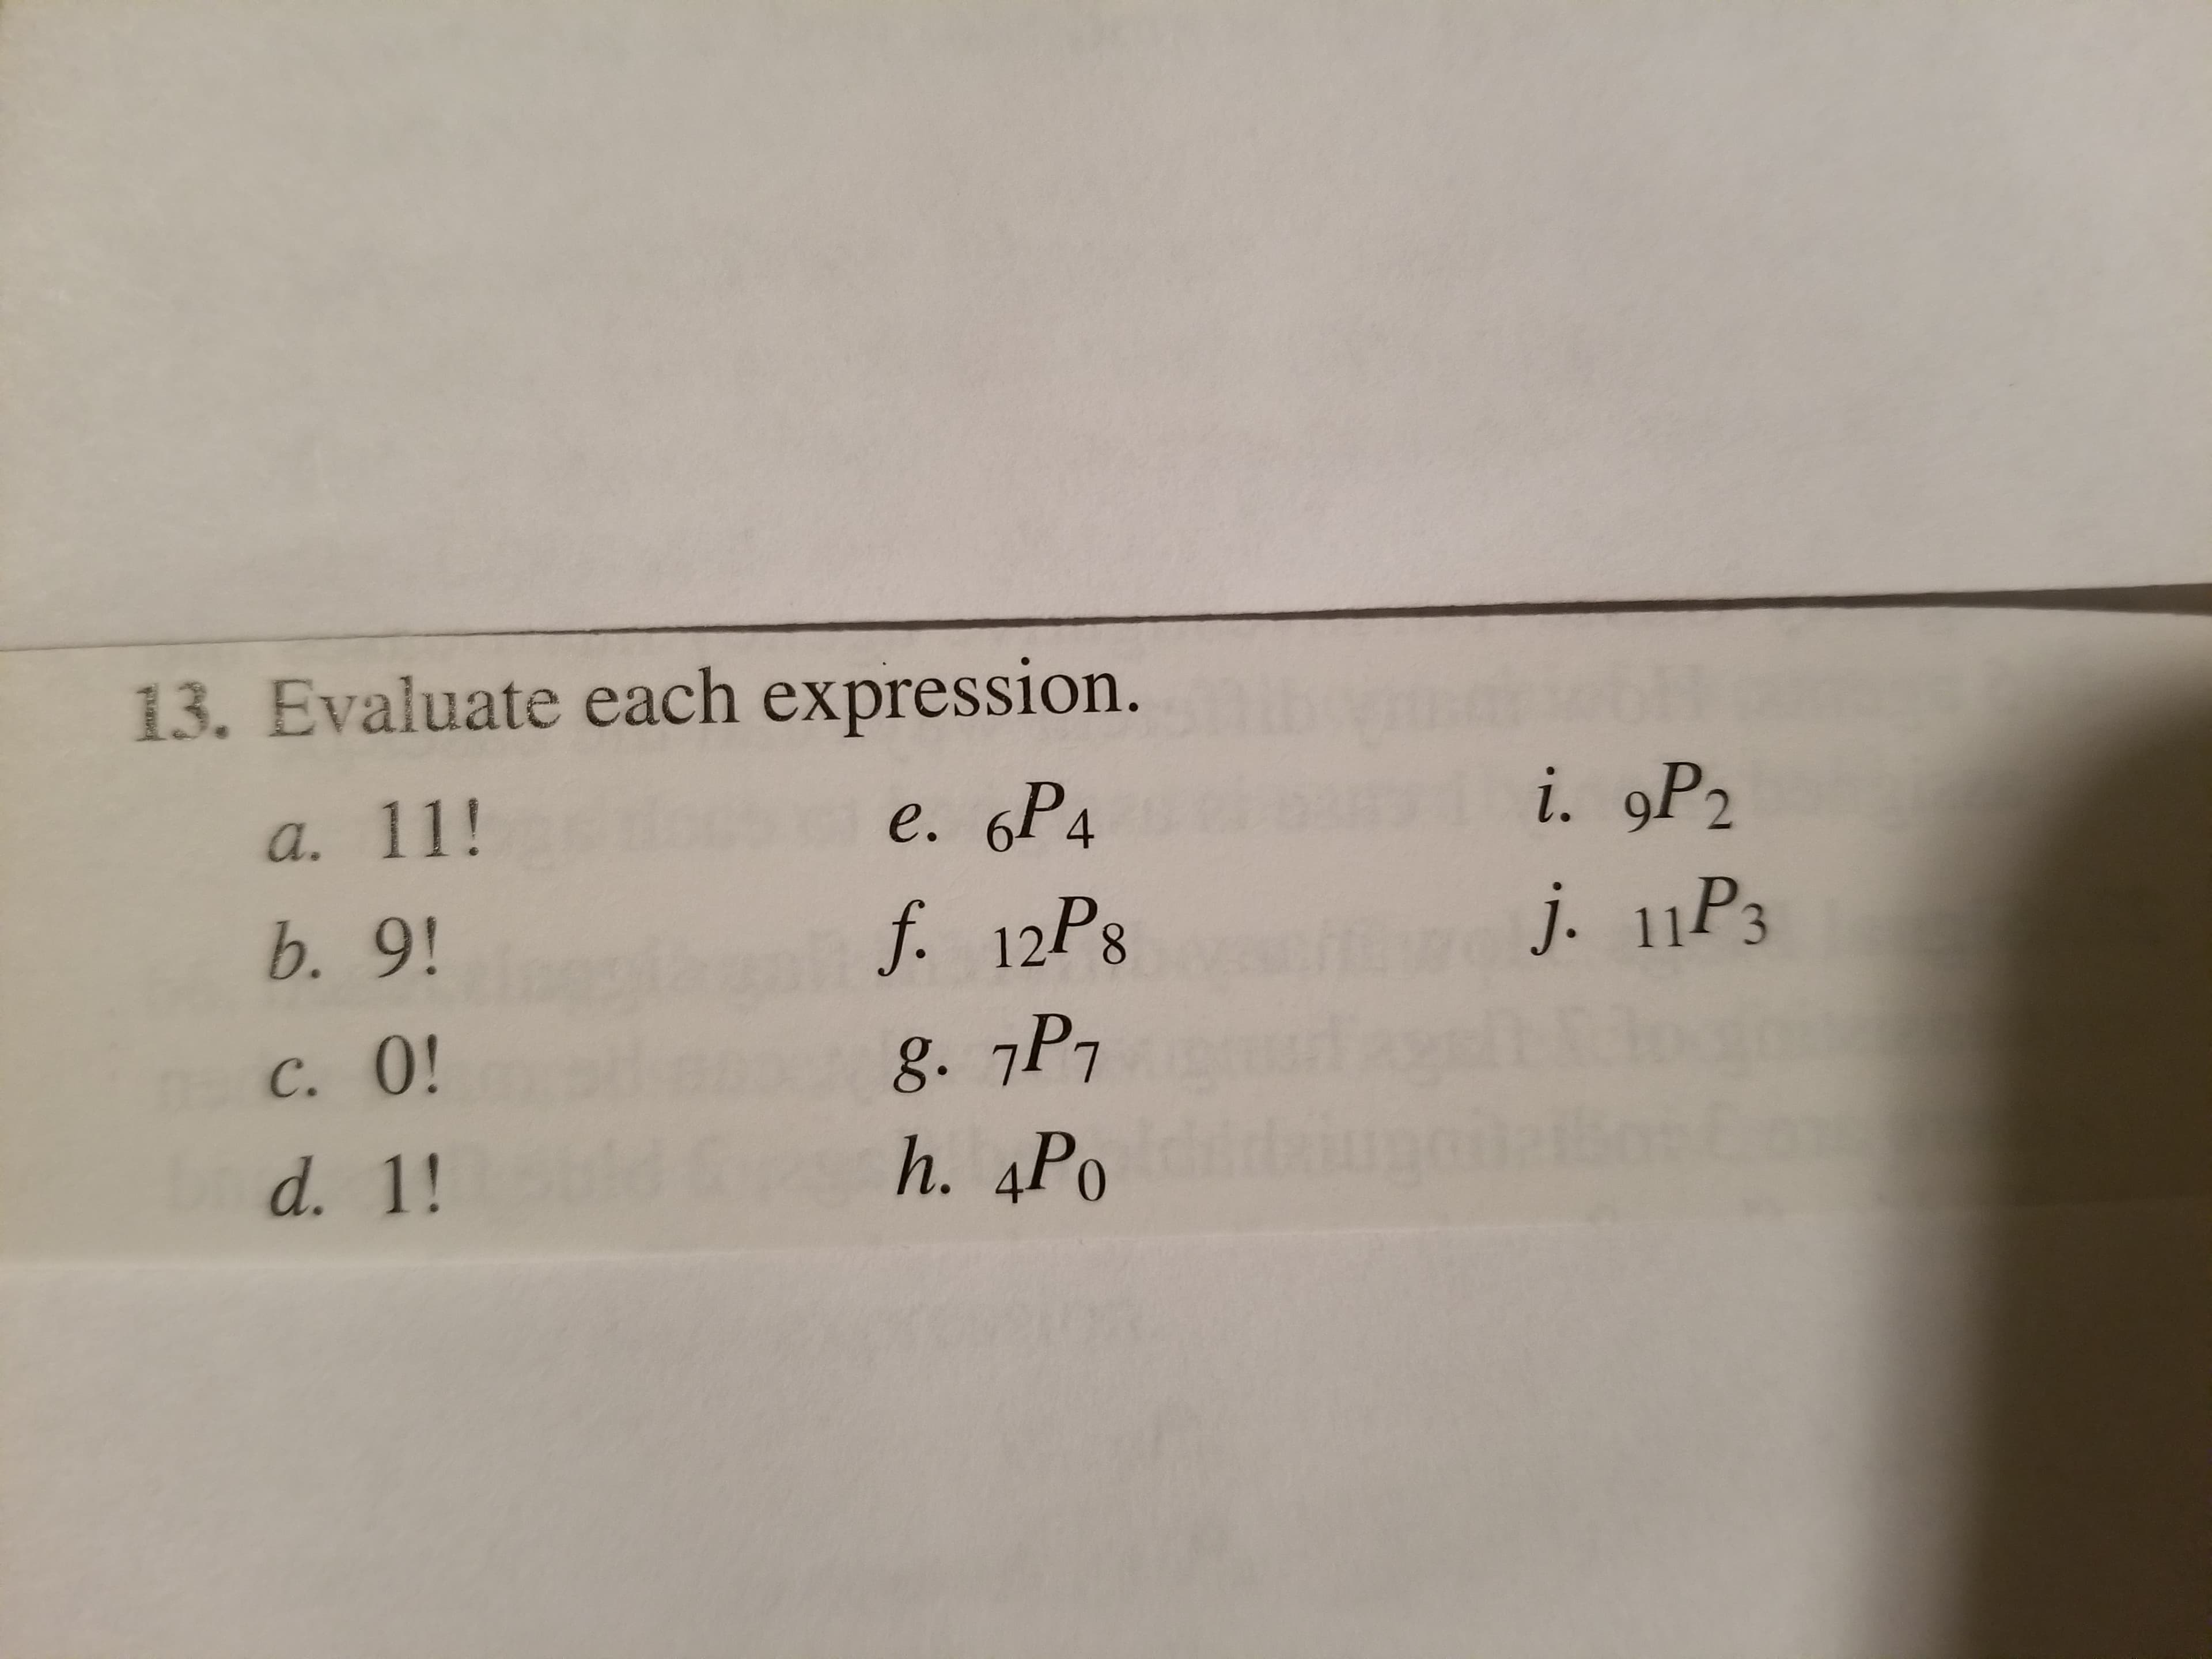 13. Evaluate each expression.
12P8
h. 4Po
e. 6P4
i. 9P2
a.
b. 9!
C. 0!
J. 113
P2
